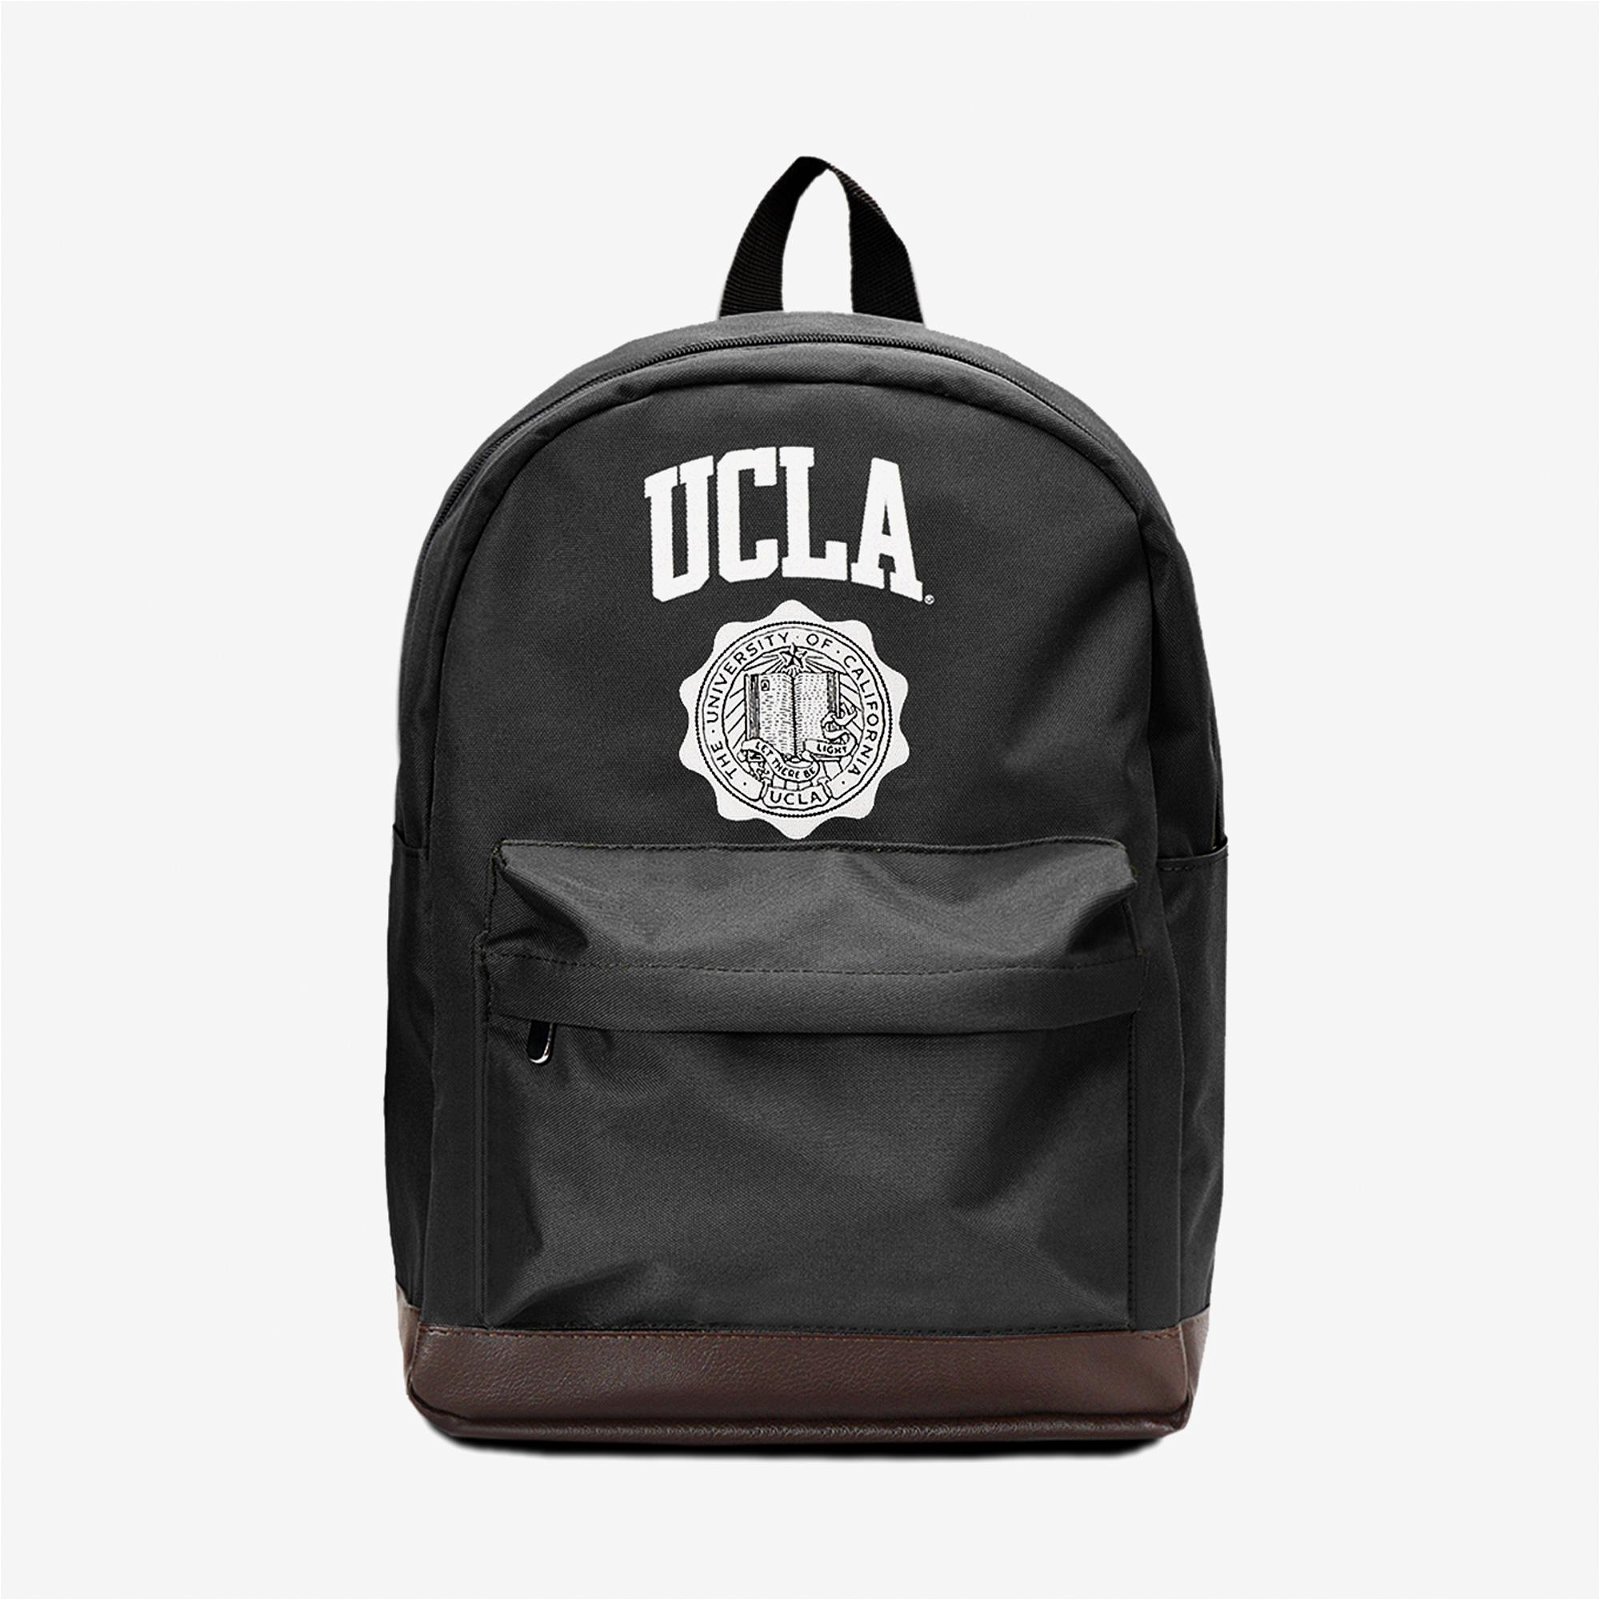 UCLA Walter Siyah Sırt Çantası